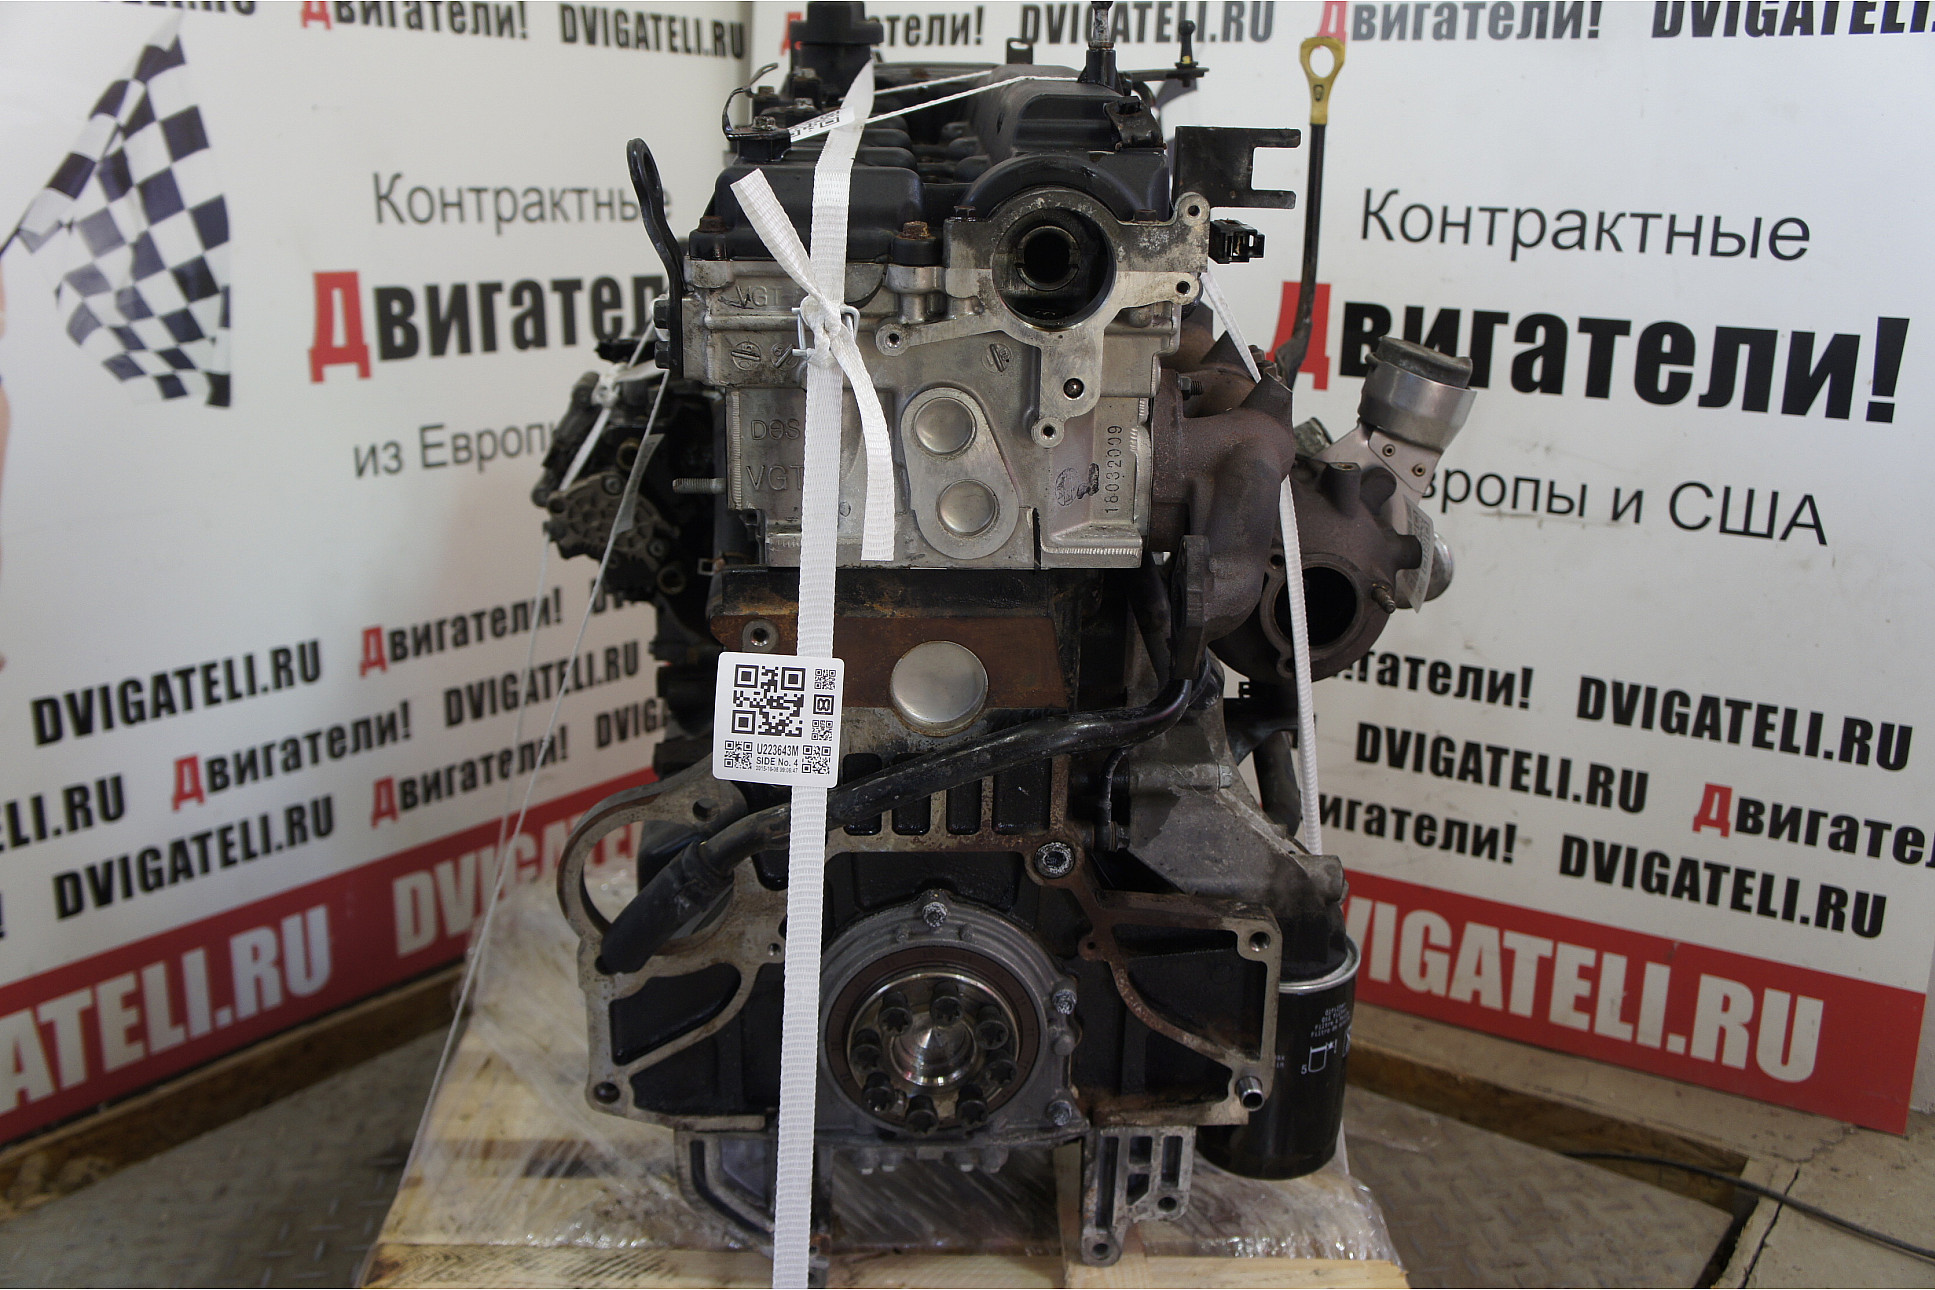 Где Купить Контрактный Двигатель В Москве Отзывы